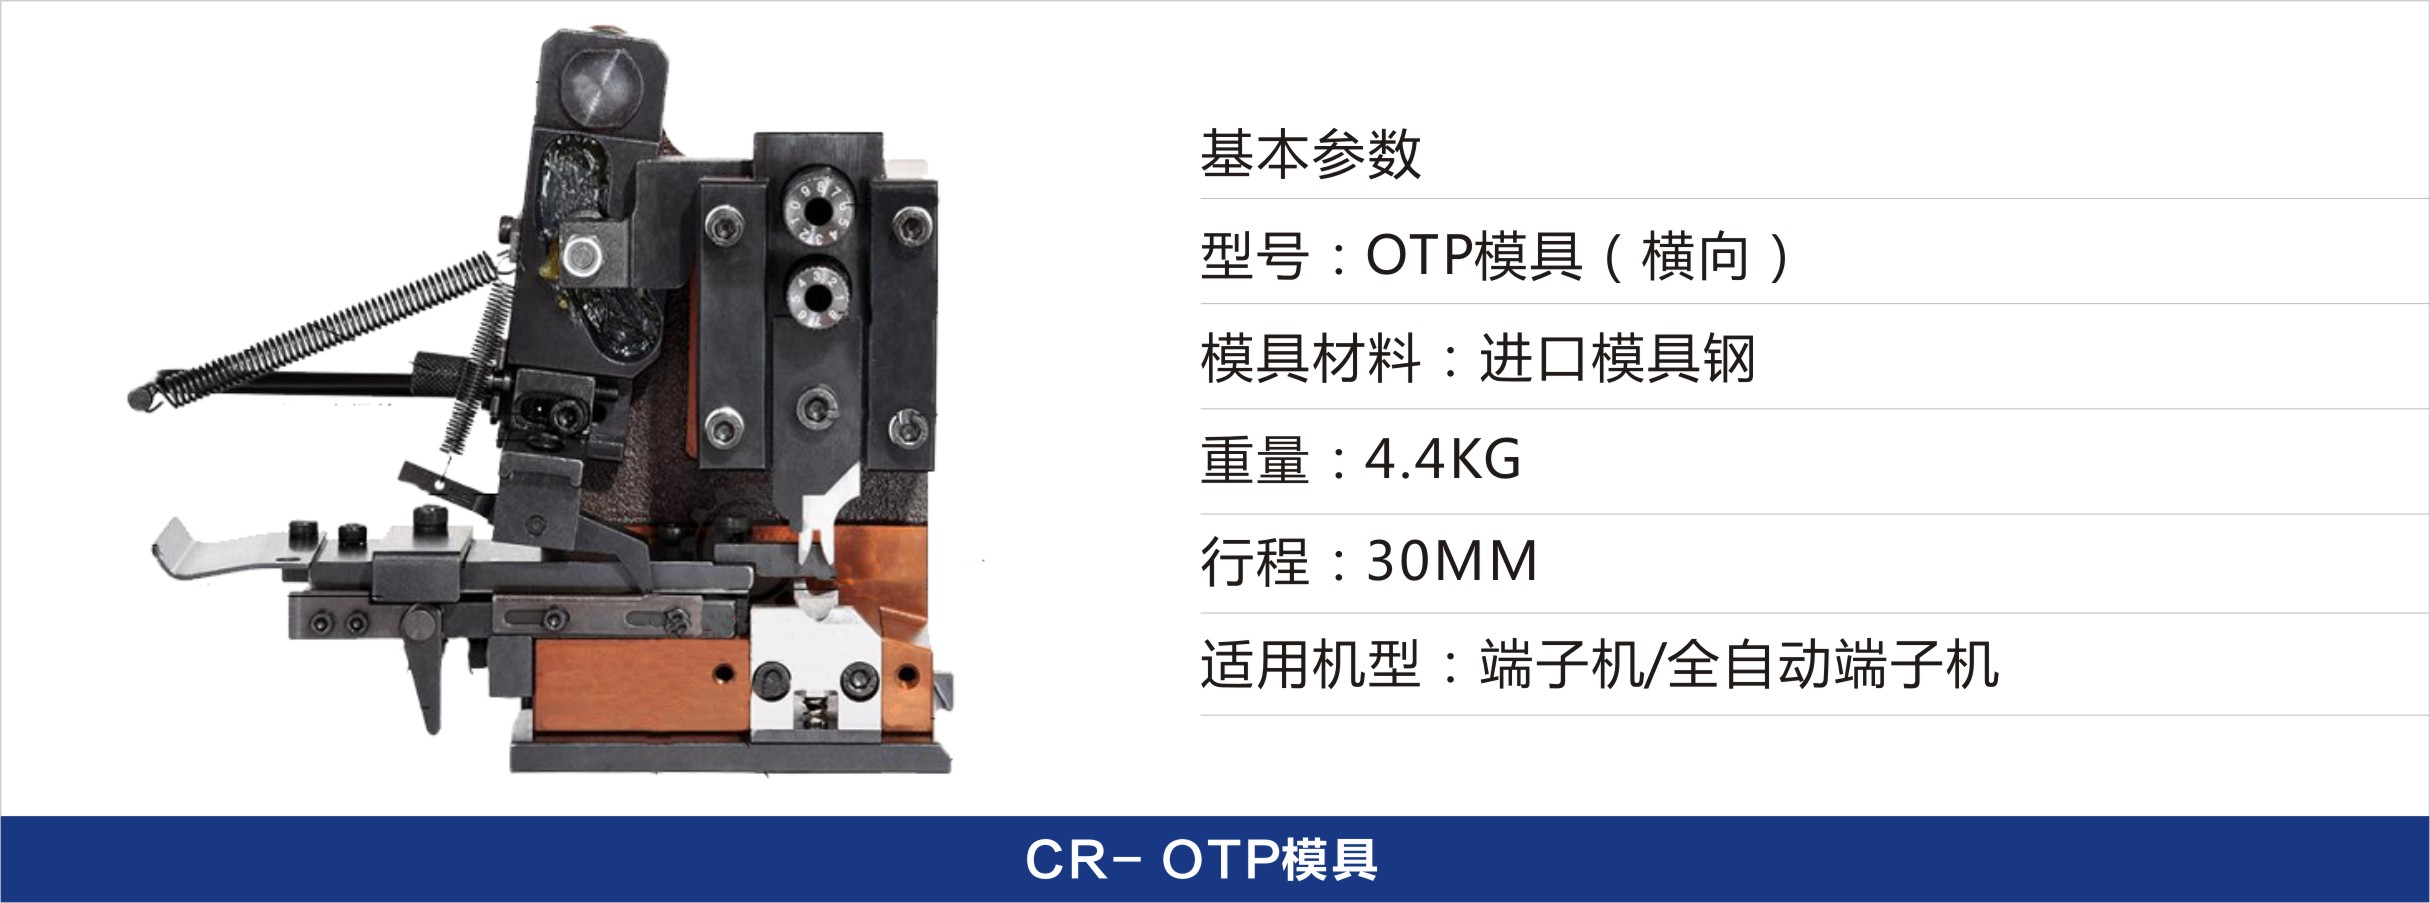 CR-OTP模具.jpg